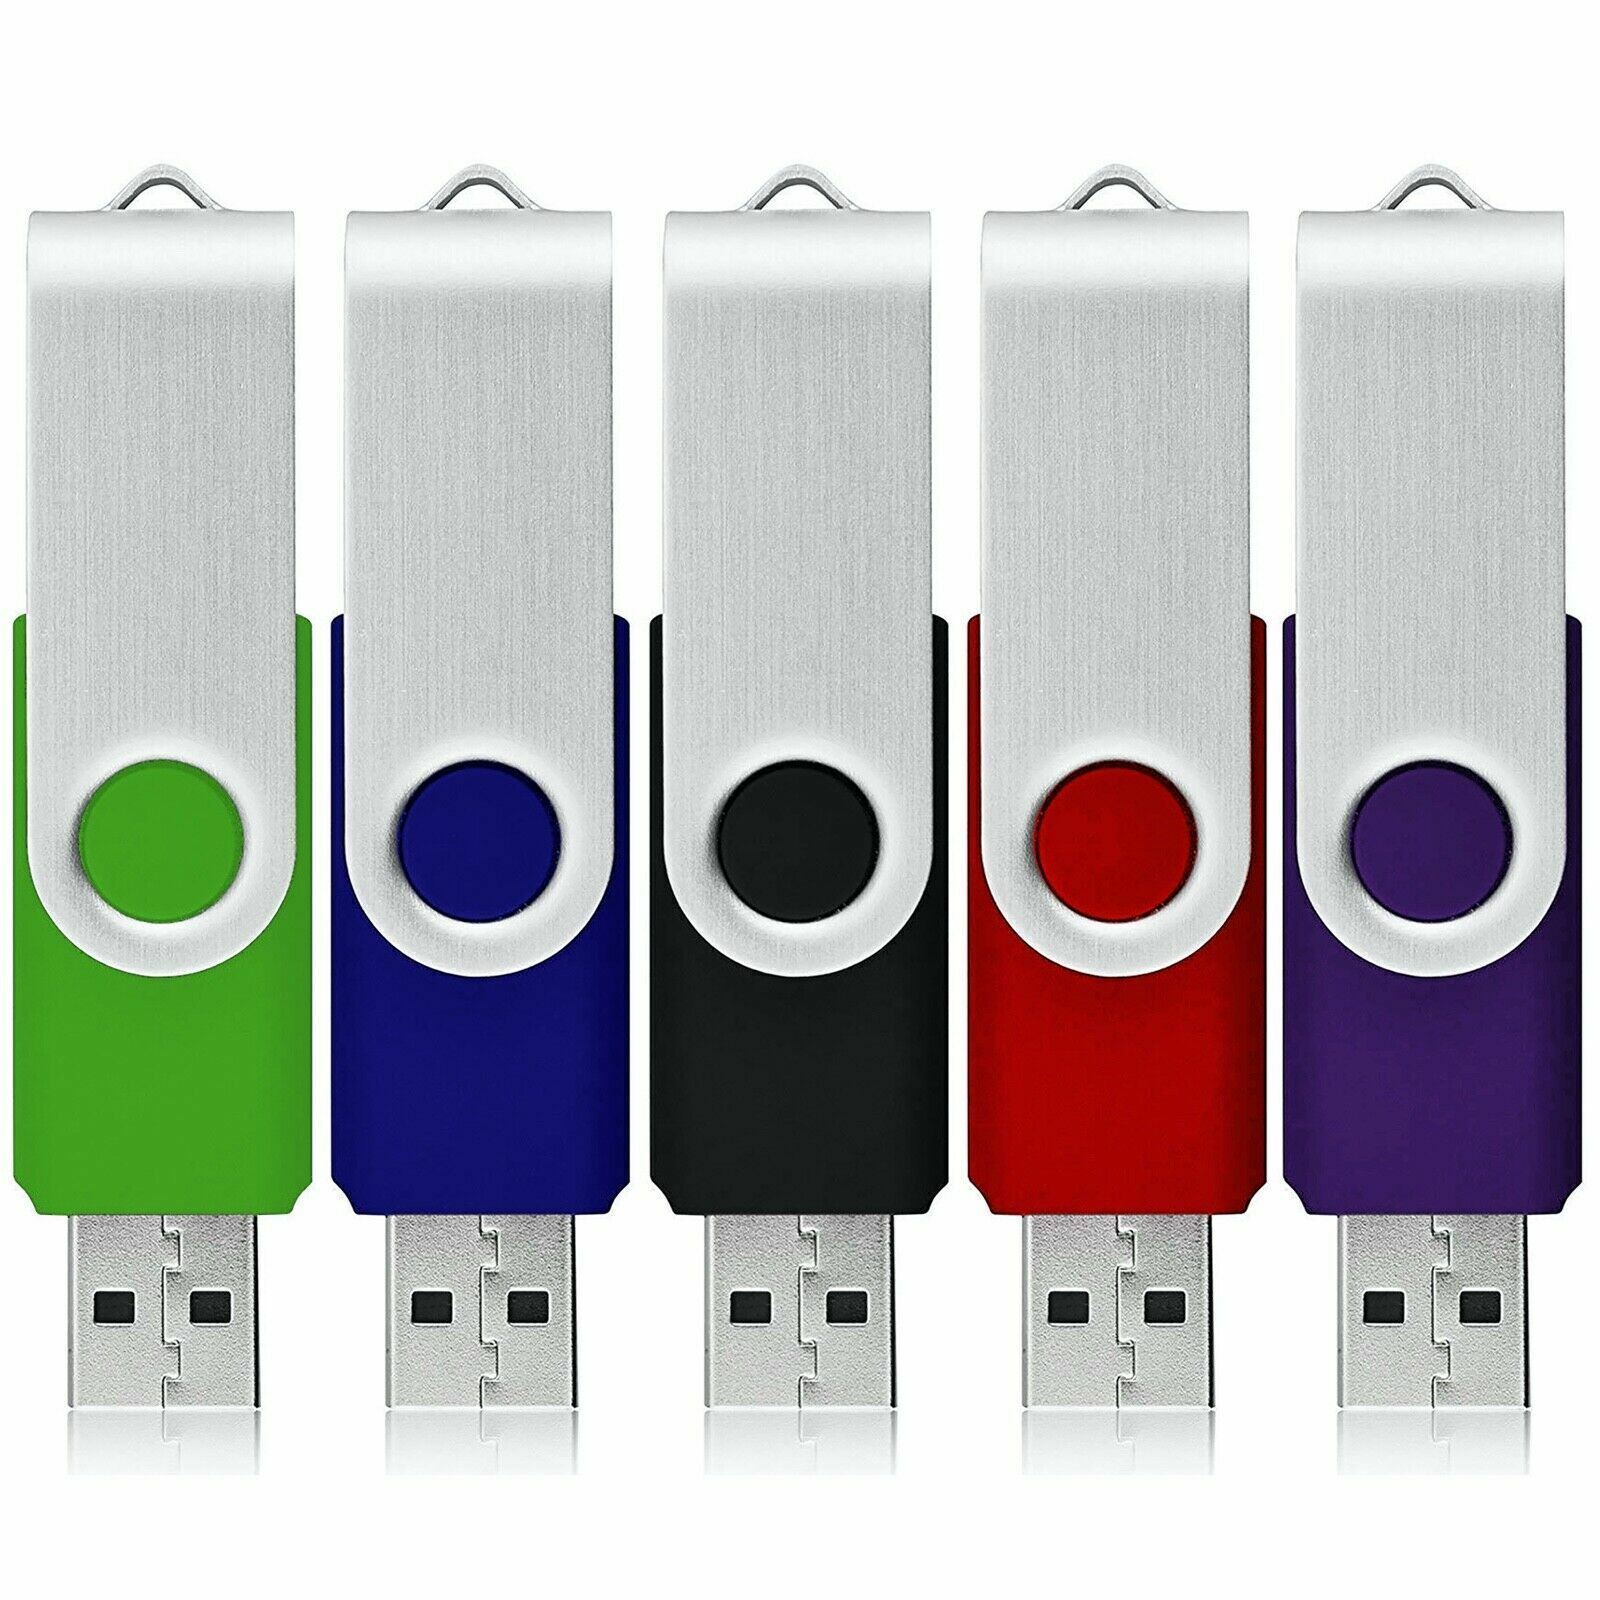 Bulk USB Flash Drive Memory Stick Pendrive Thumb Drive 4GB, 8GB, 32GB, 64GB LOT